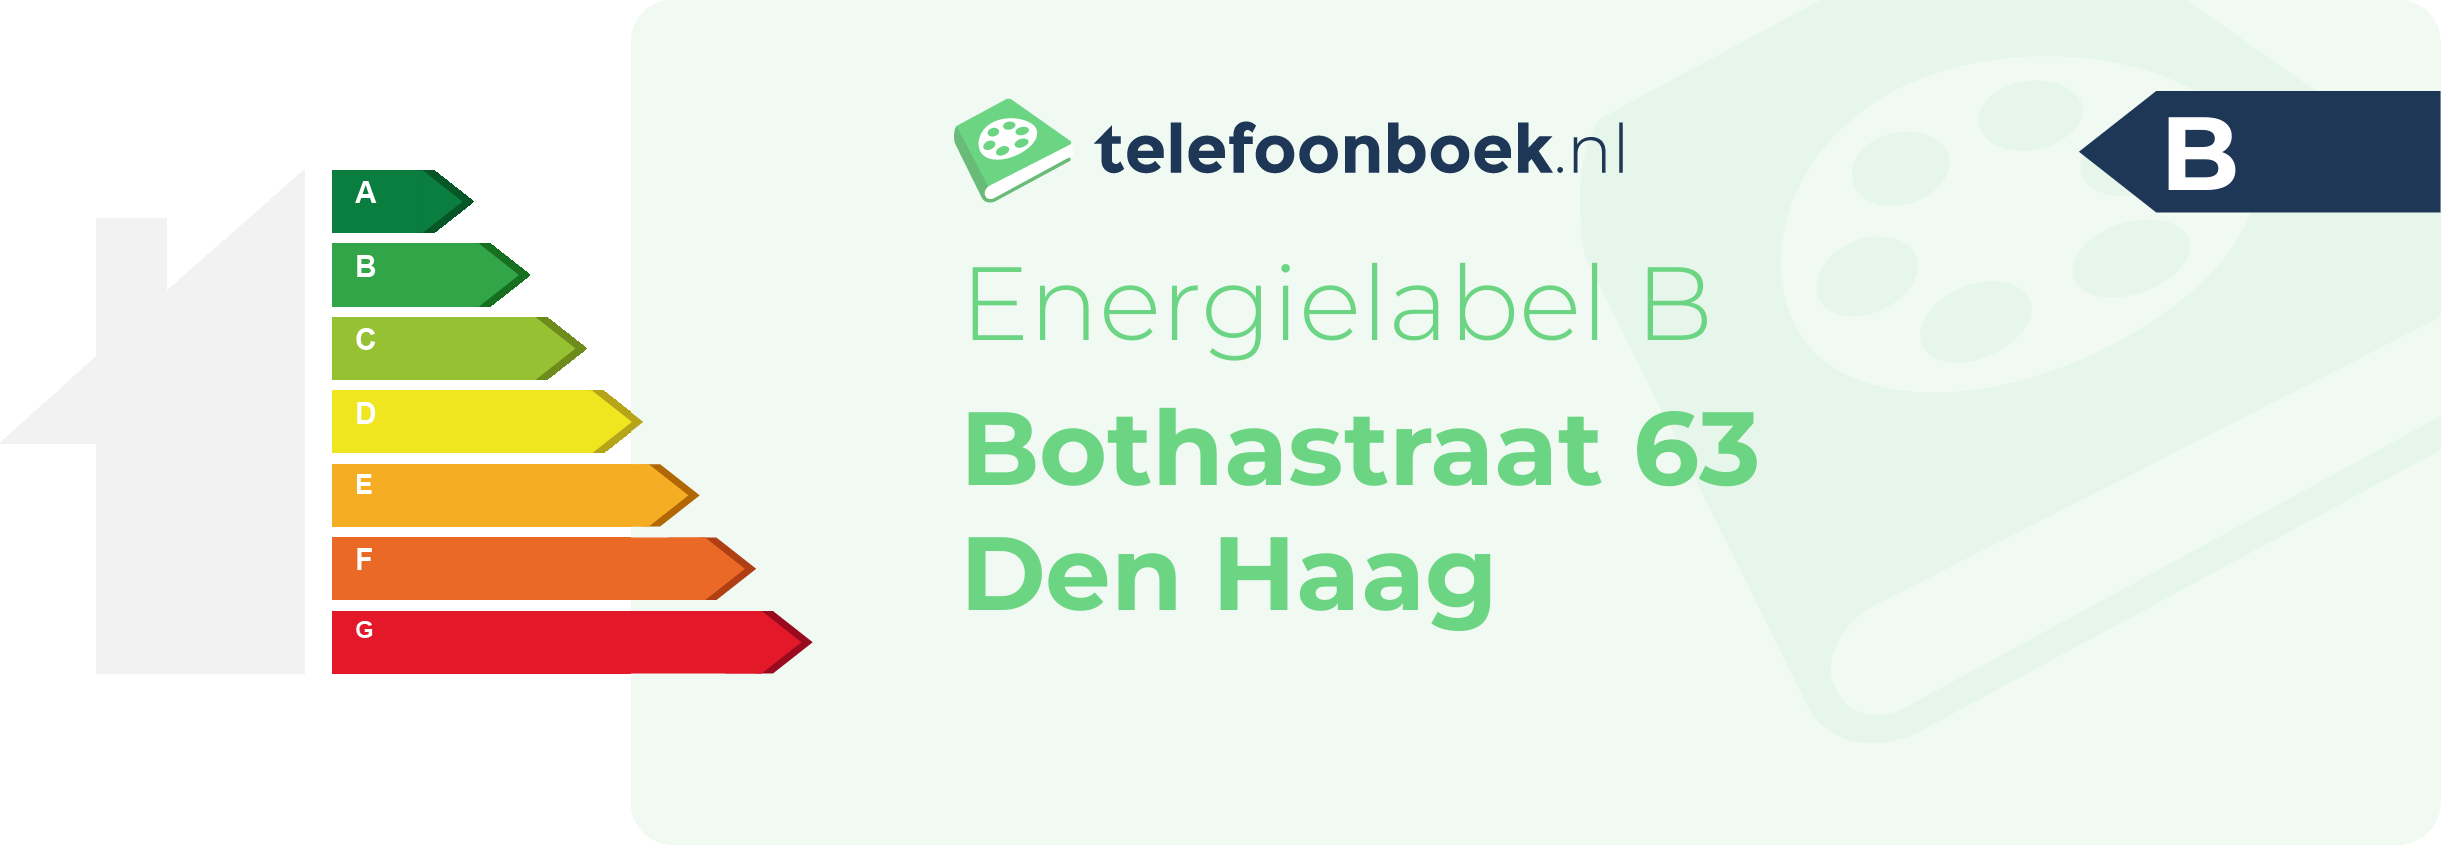 Energielabel Bothastraat 63 Den Haag